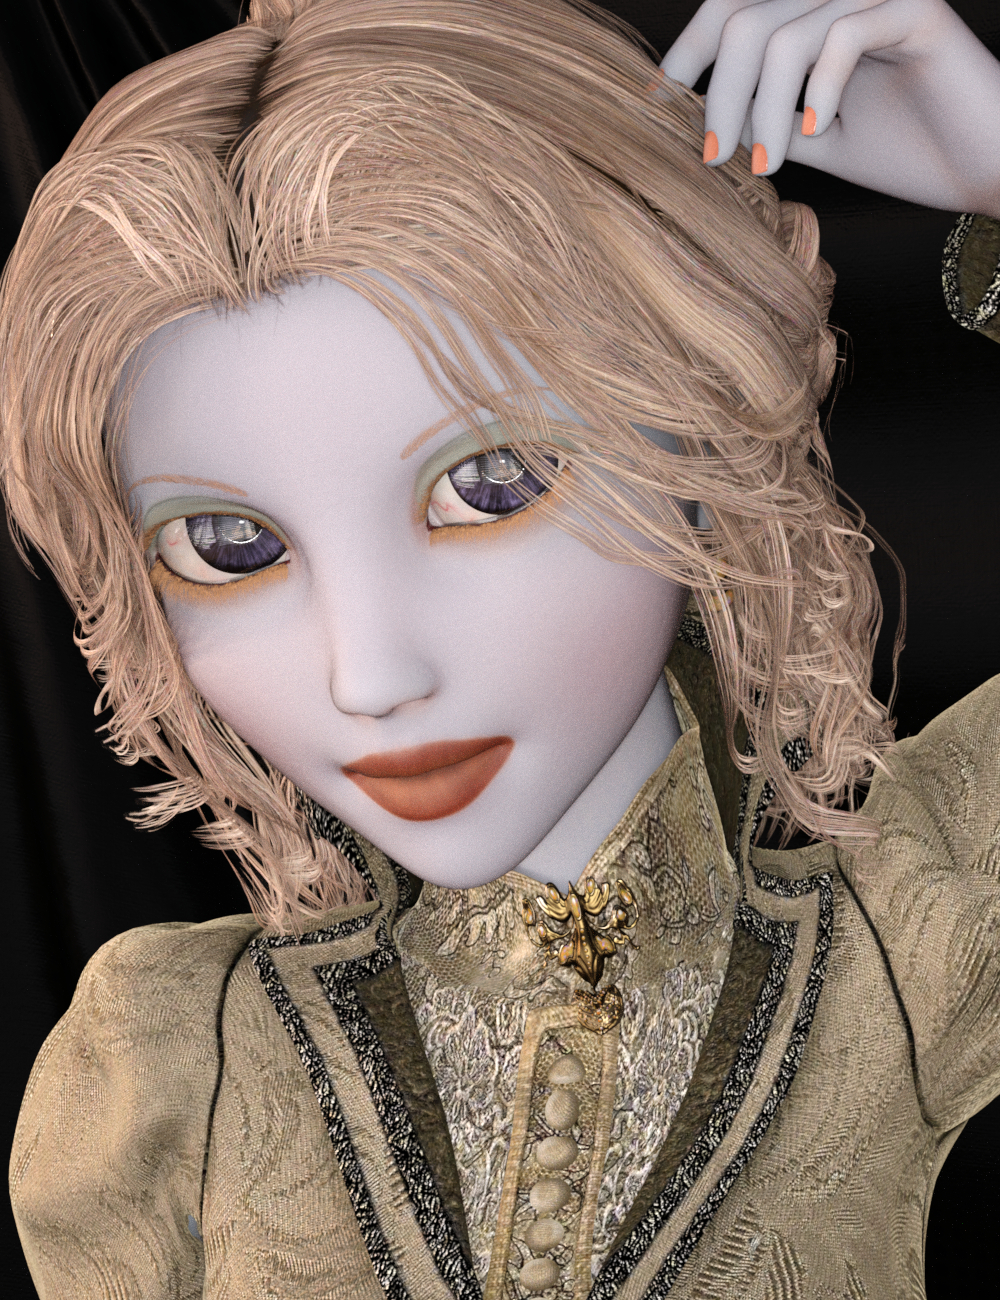 SF Ball Joint Doll Genesis 3 Female(s) by: SickleyieldFuseling, 3D Models by Daz 3D